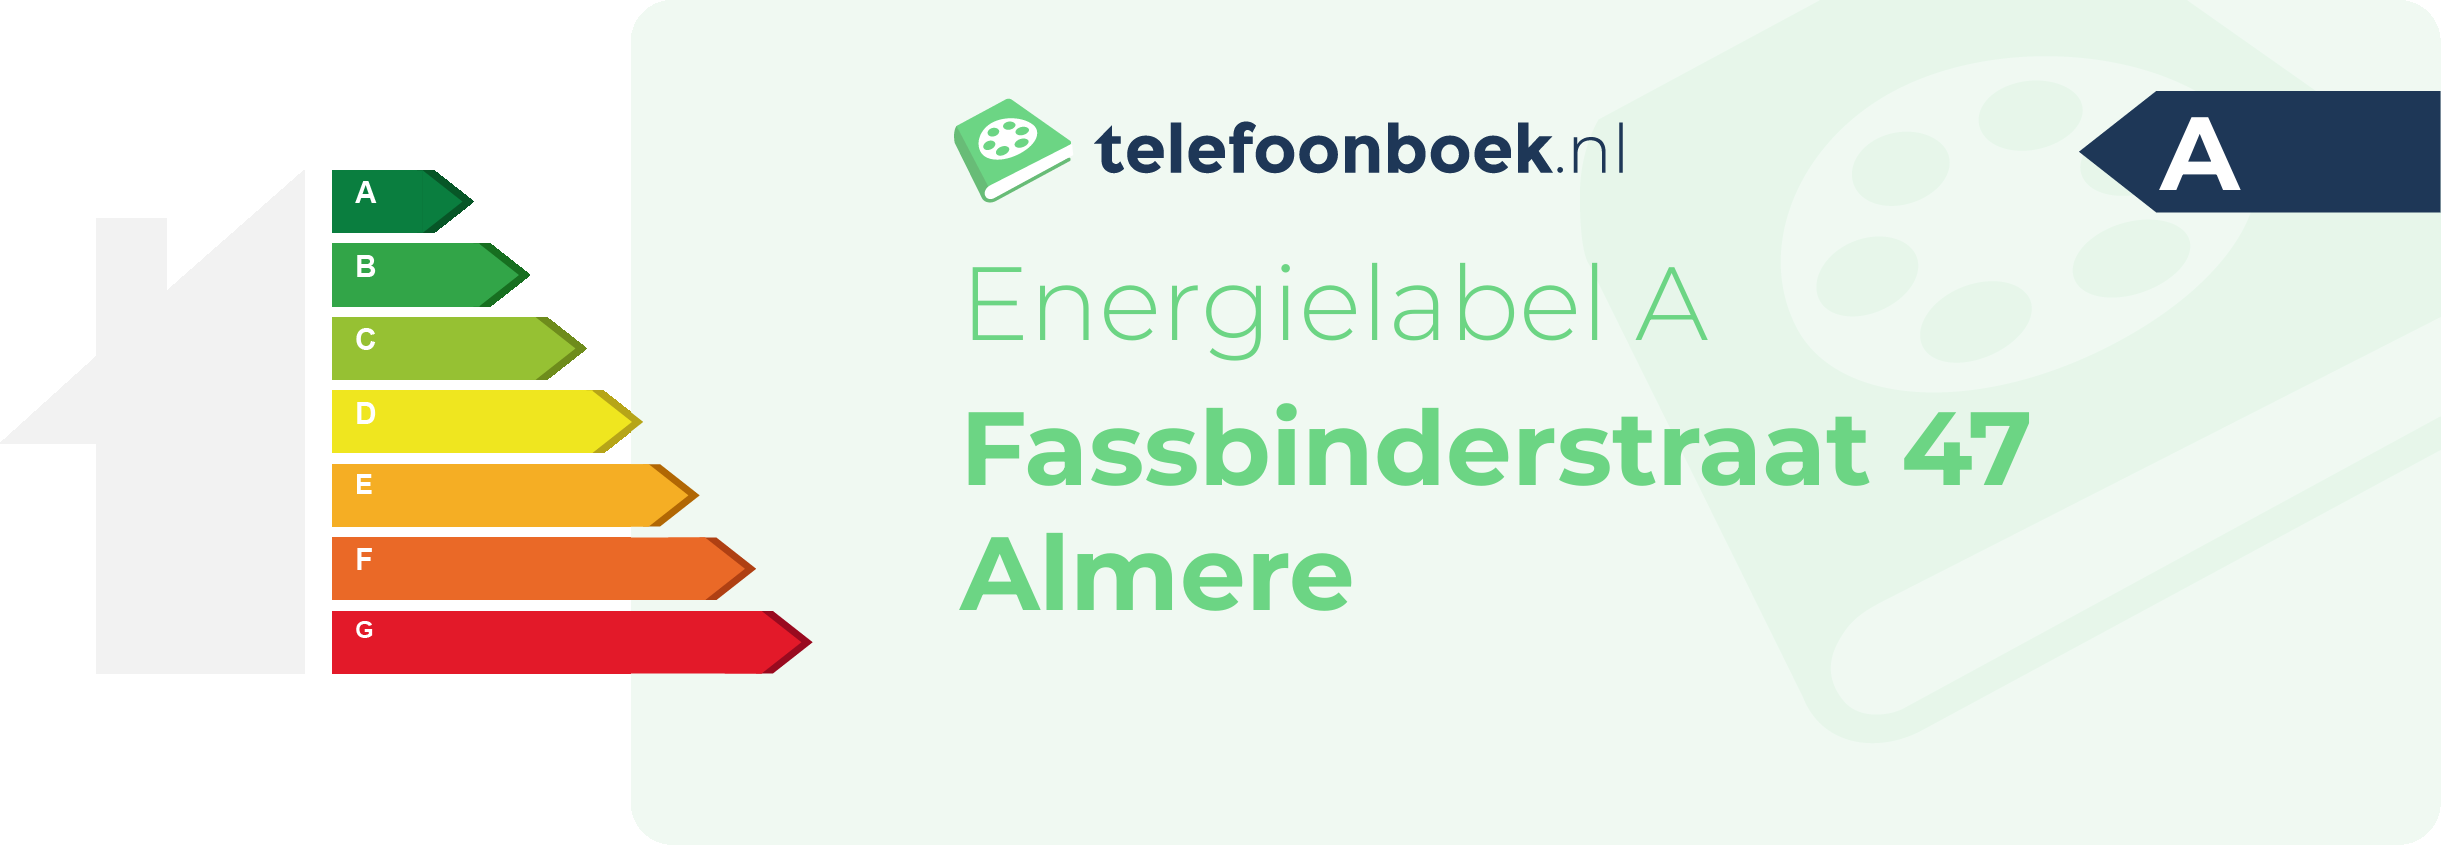 Energielabel Fassbinderstraat 47 Almere